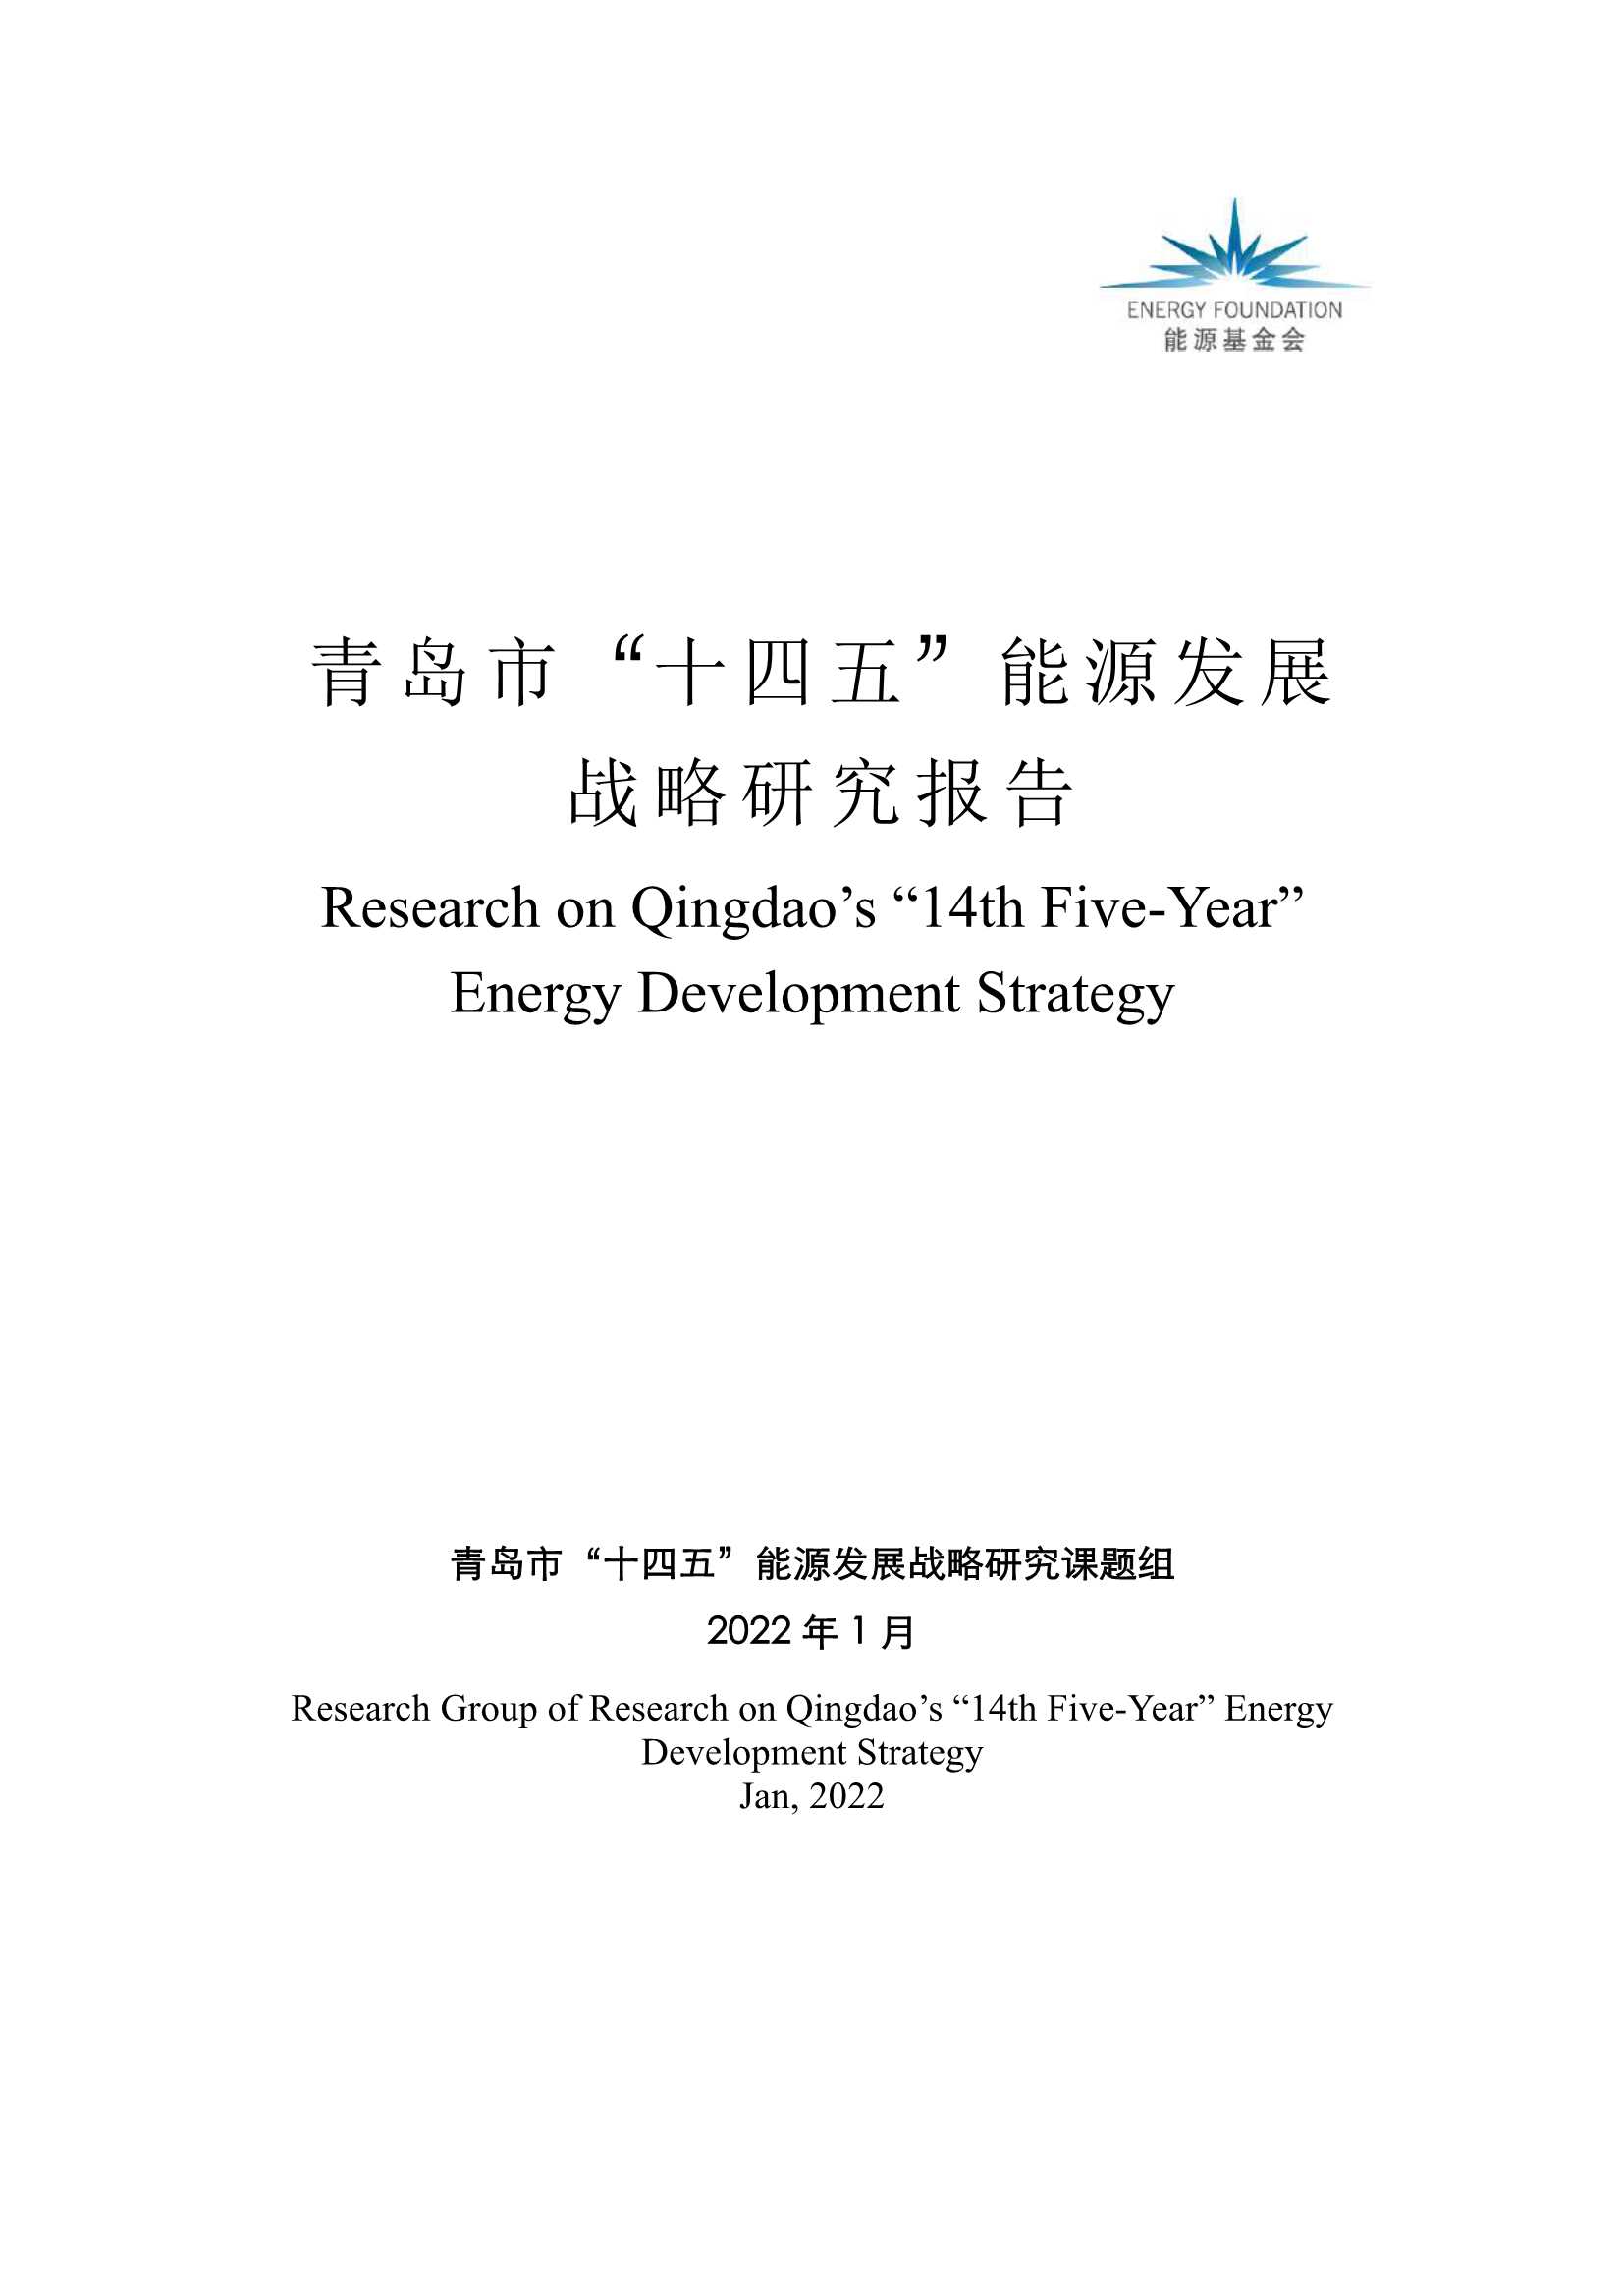 青岛十四五能源发展战略研究报告-2022.05-34页